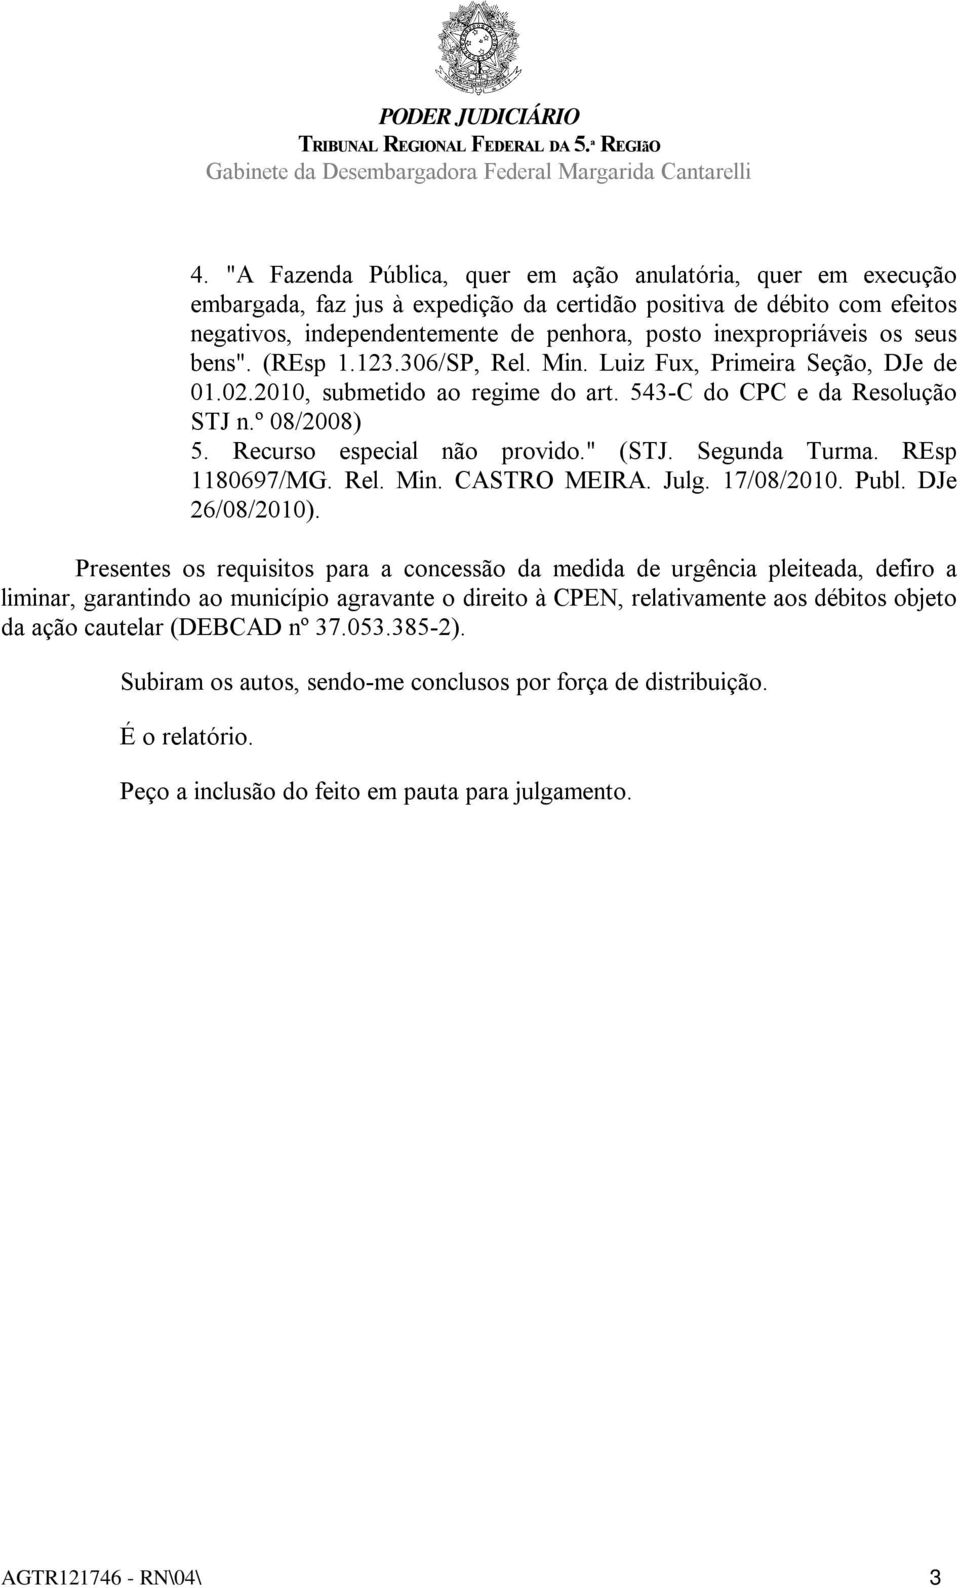 Recurso especial não provido." (STJ. Segunda Turma. REsp 1180697/MG. Rel. Min. CASTRO MEIRA. Julg. 17/08/2010. Publ. DJe 26/08/2010).